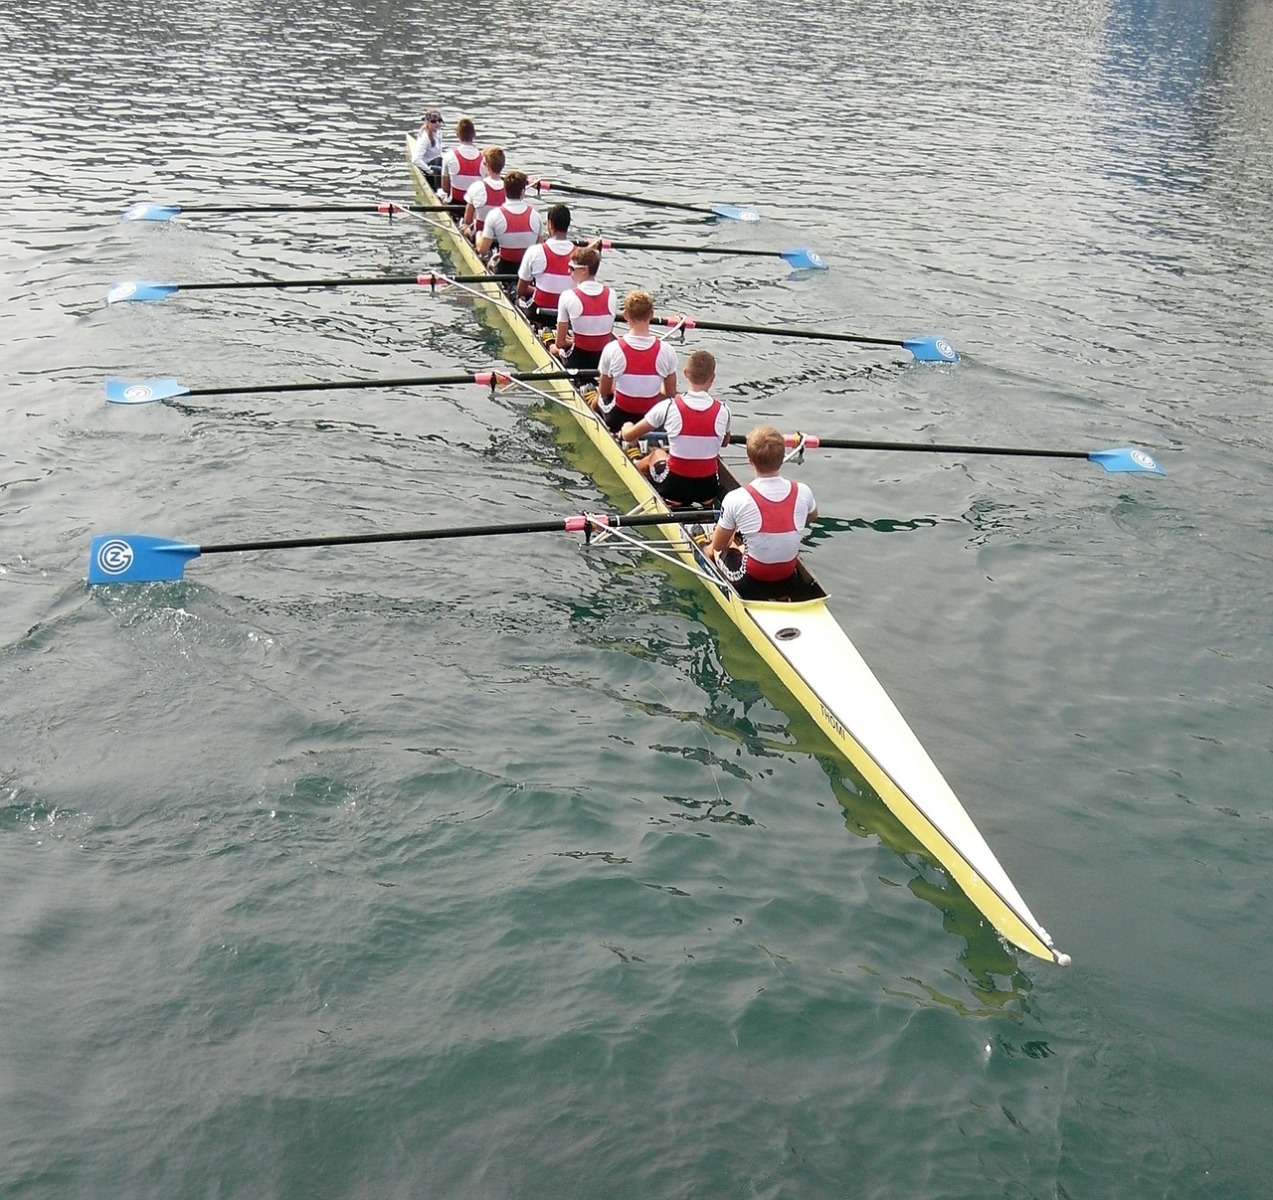 Rowing Team